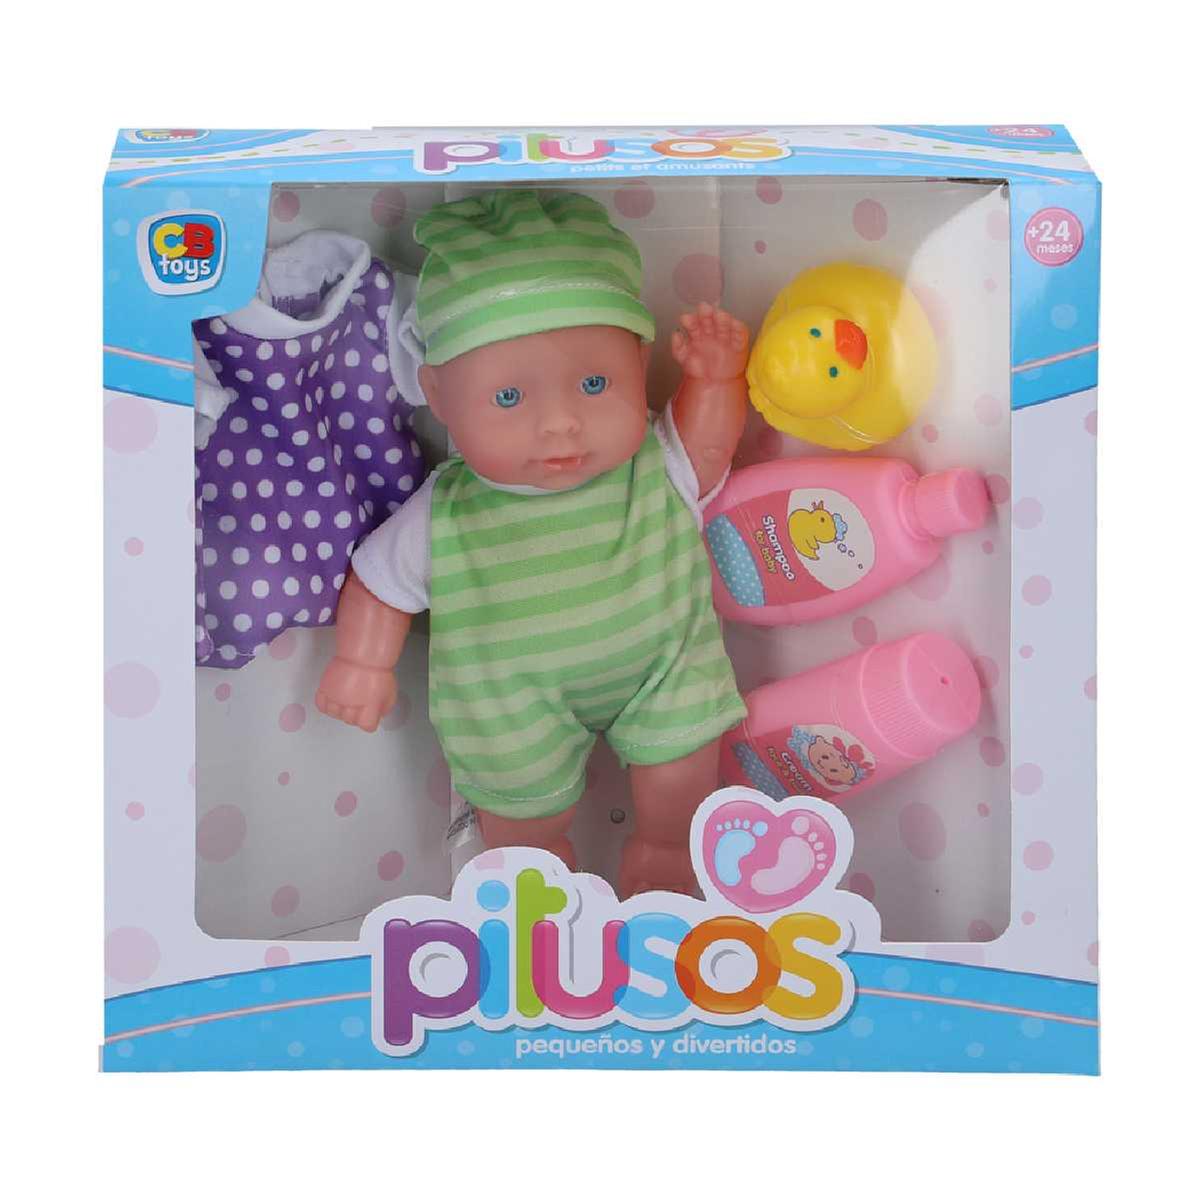 Muñeco Bebé Blandito Pitusos 20 cm con Accesorios (varios colores) | Dulces Semana Santa | Toys"R"Us